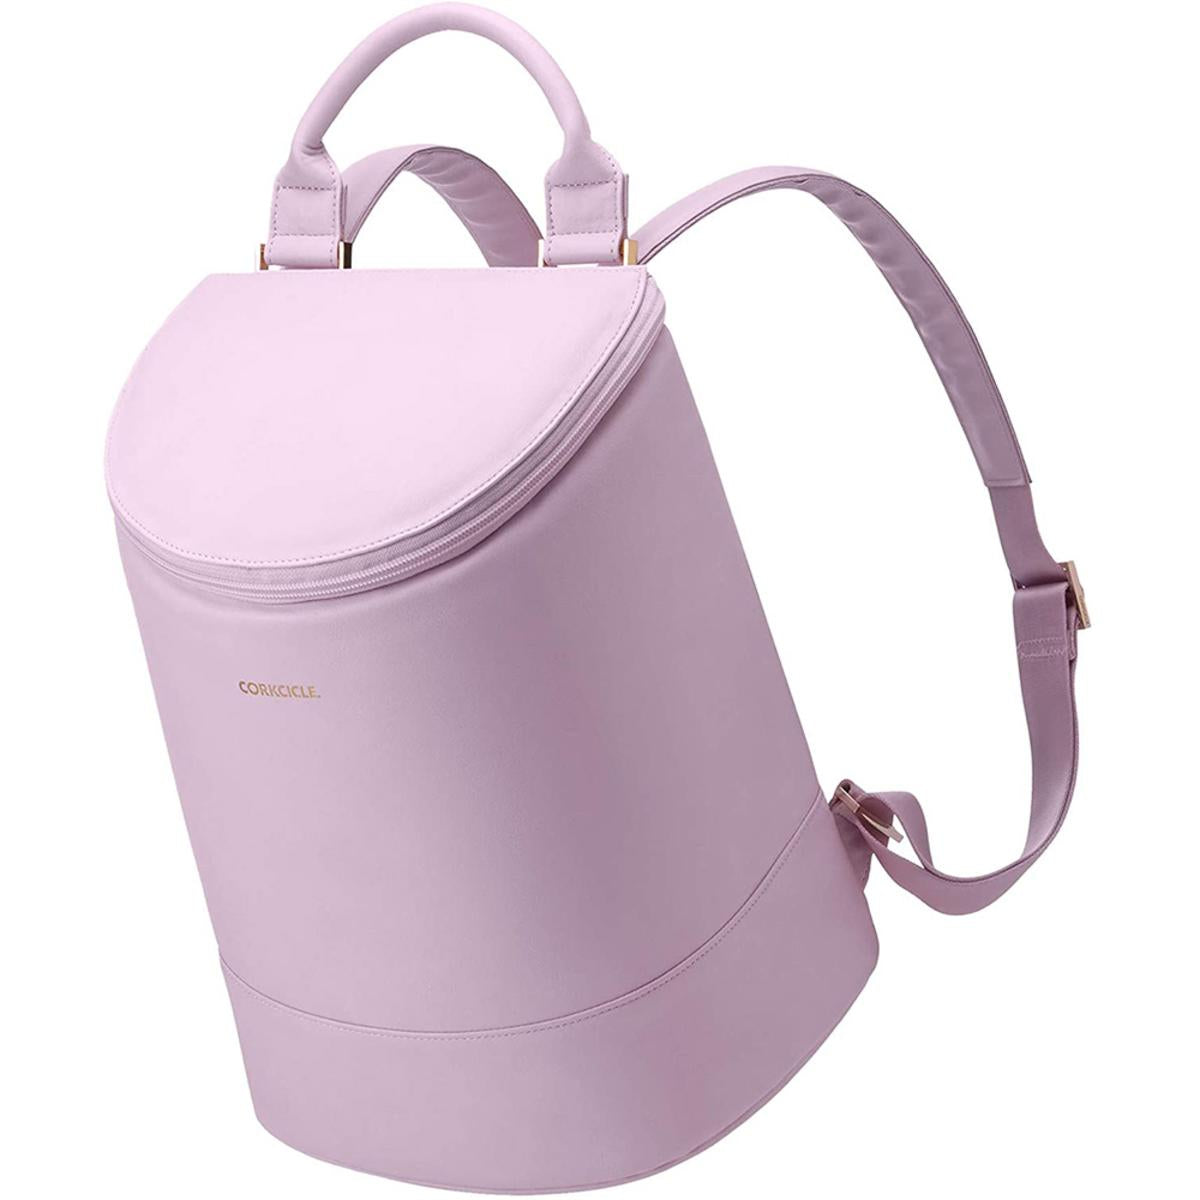 Corkcicle Eola Bucket Cooler Bag